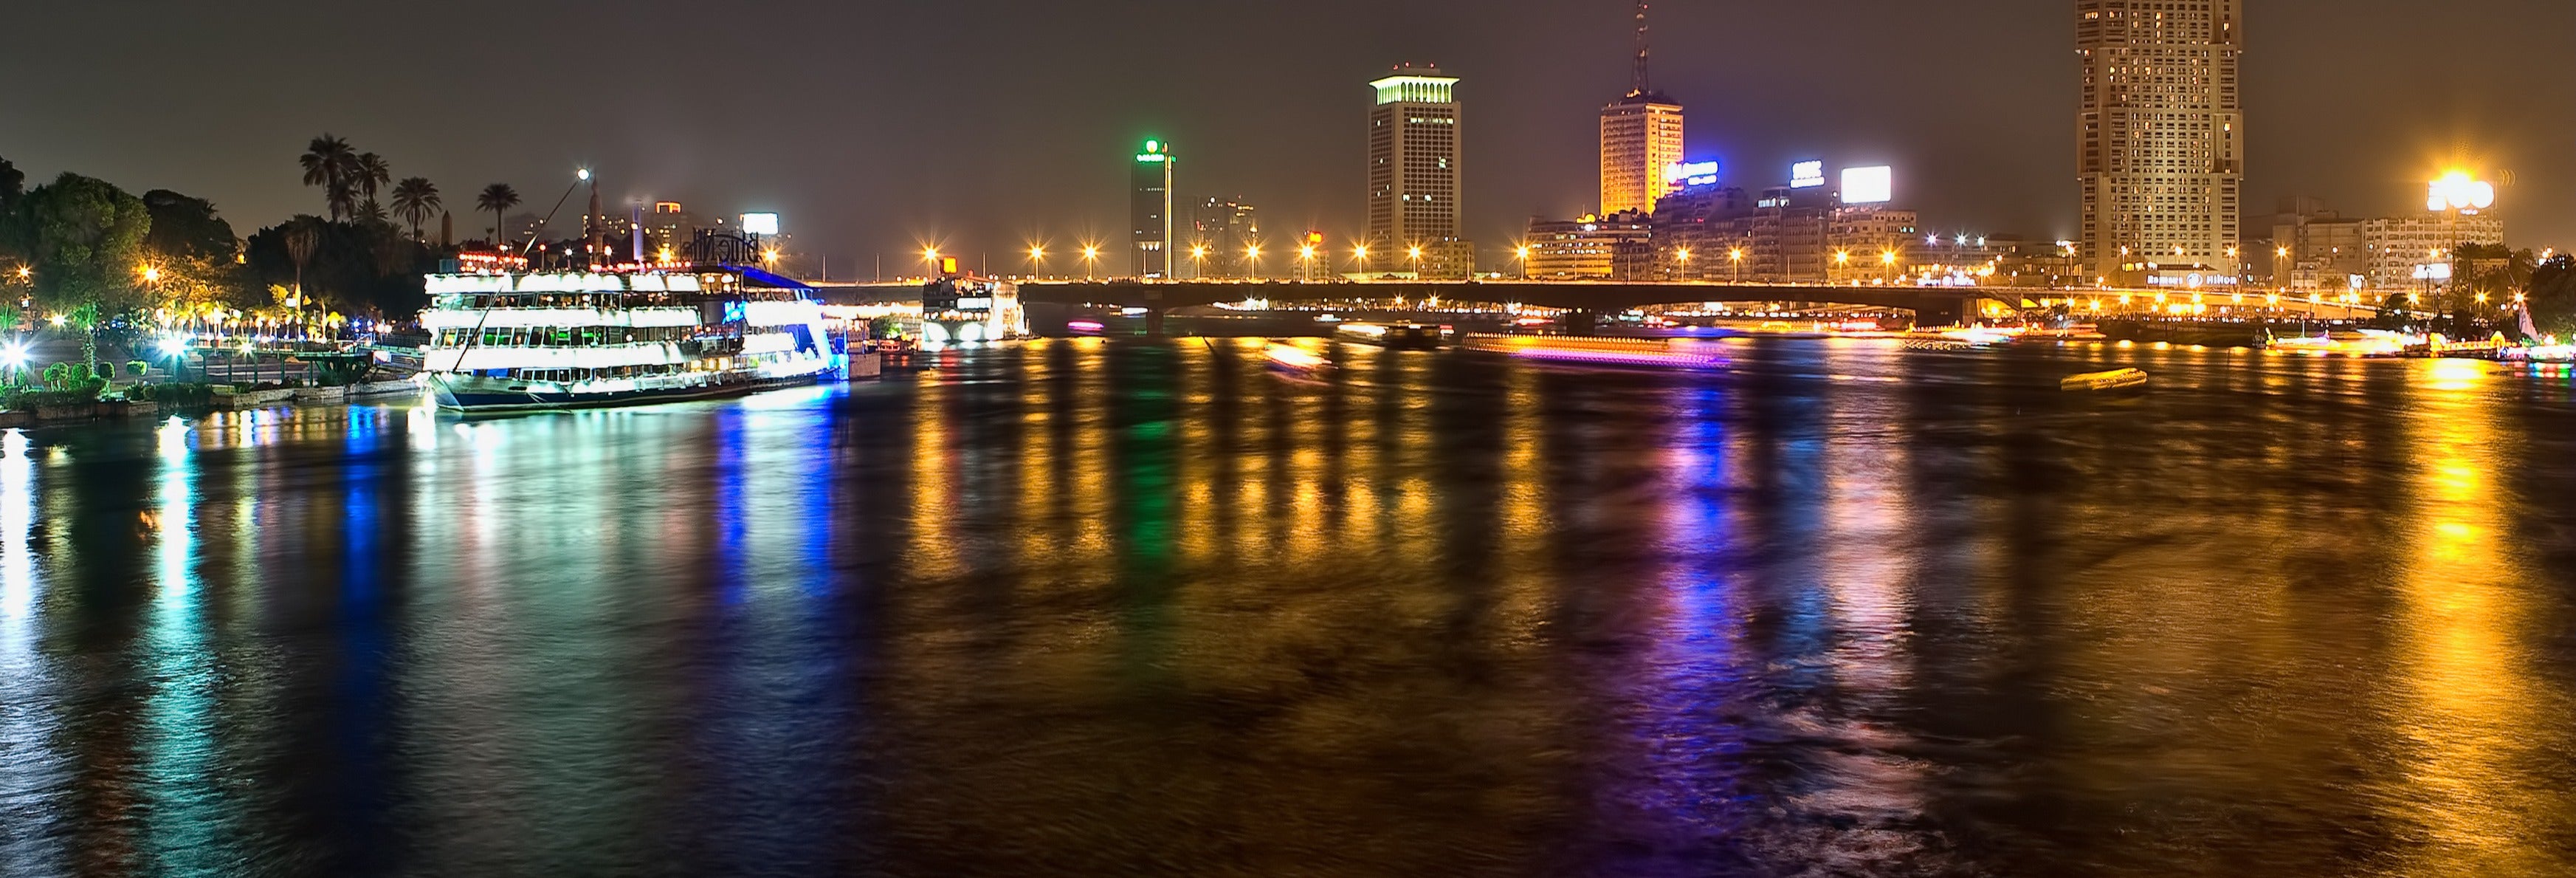 Crucero por el Nilo con cena y espectáculo desde El Cairo